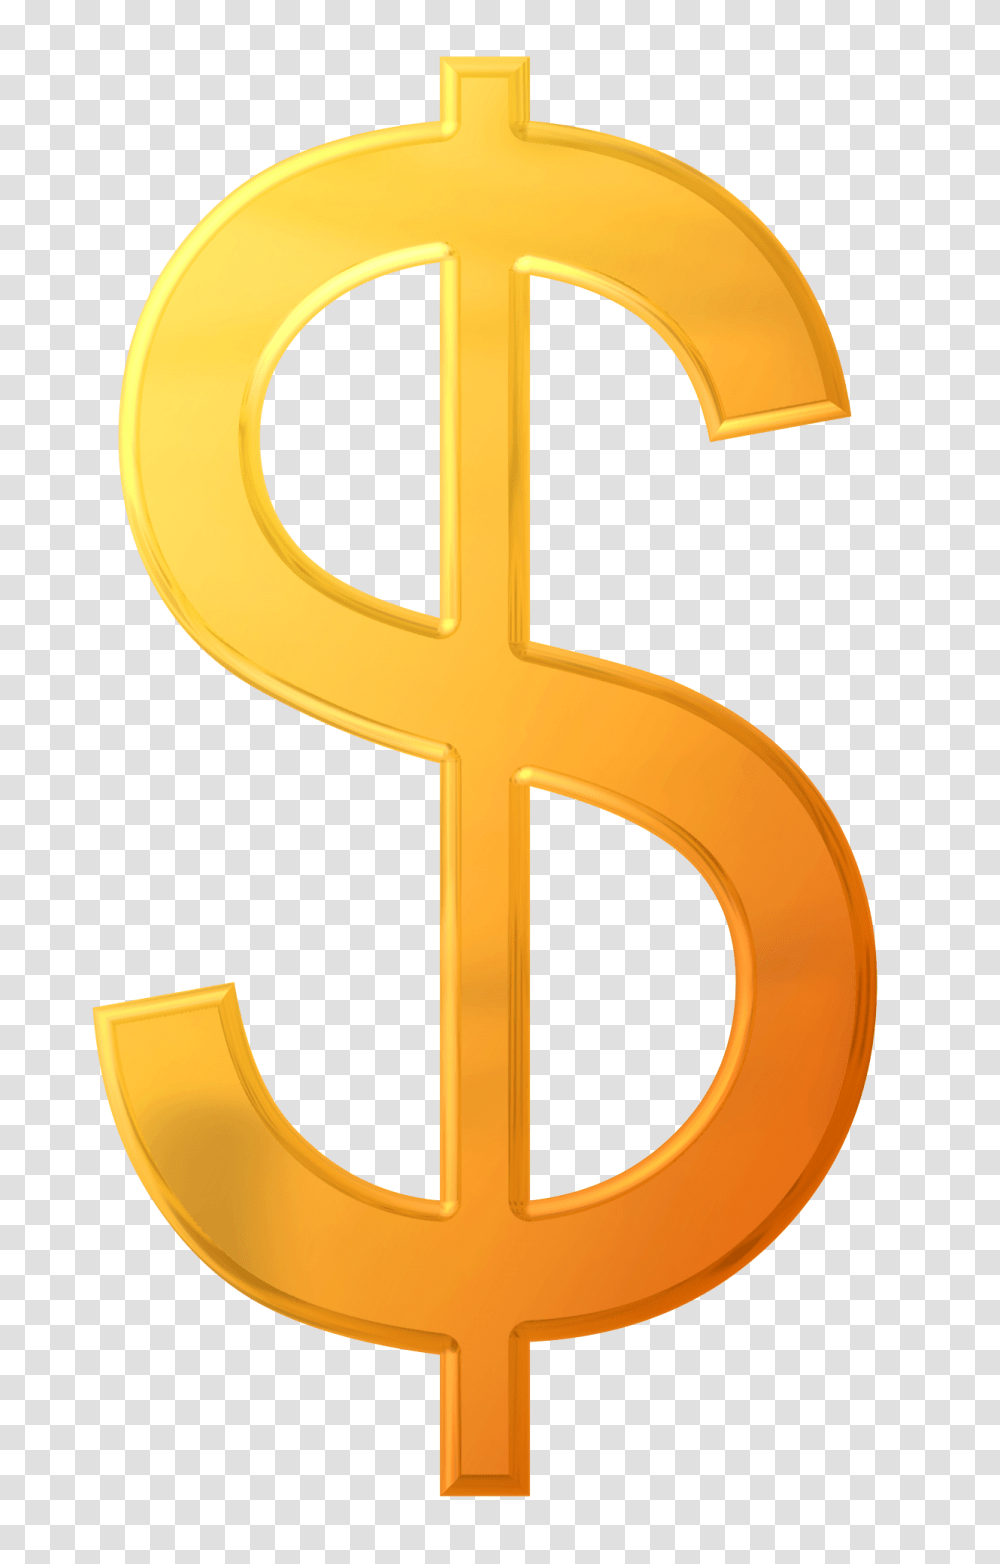 Dollar Sign Image, Alphabet, Number Transparent Png